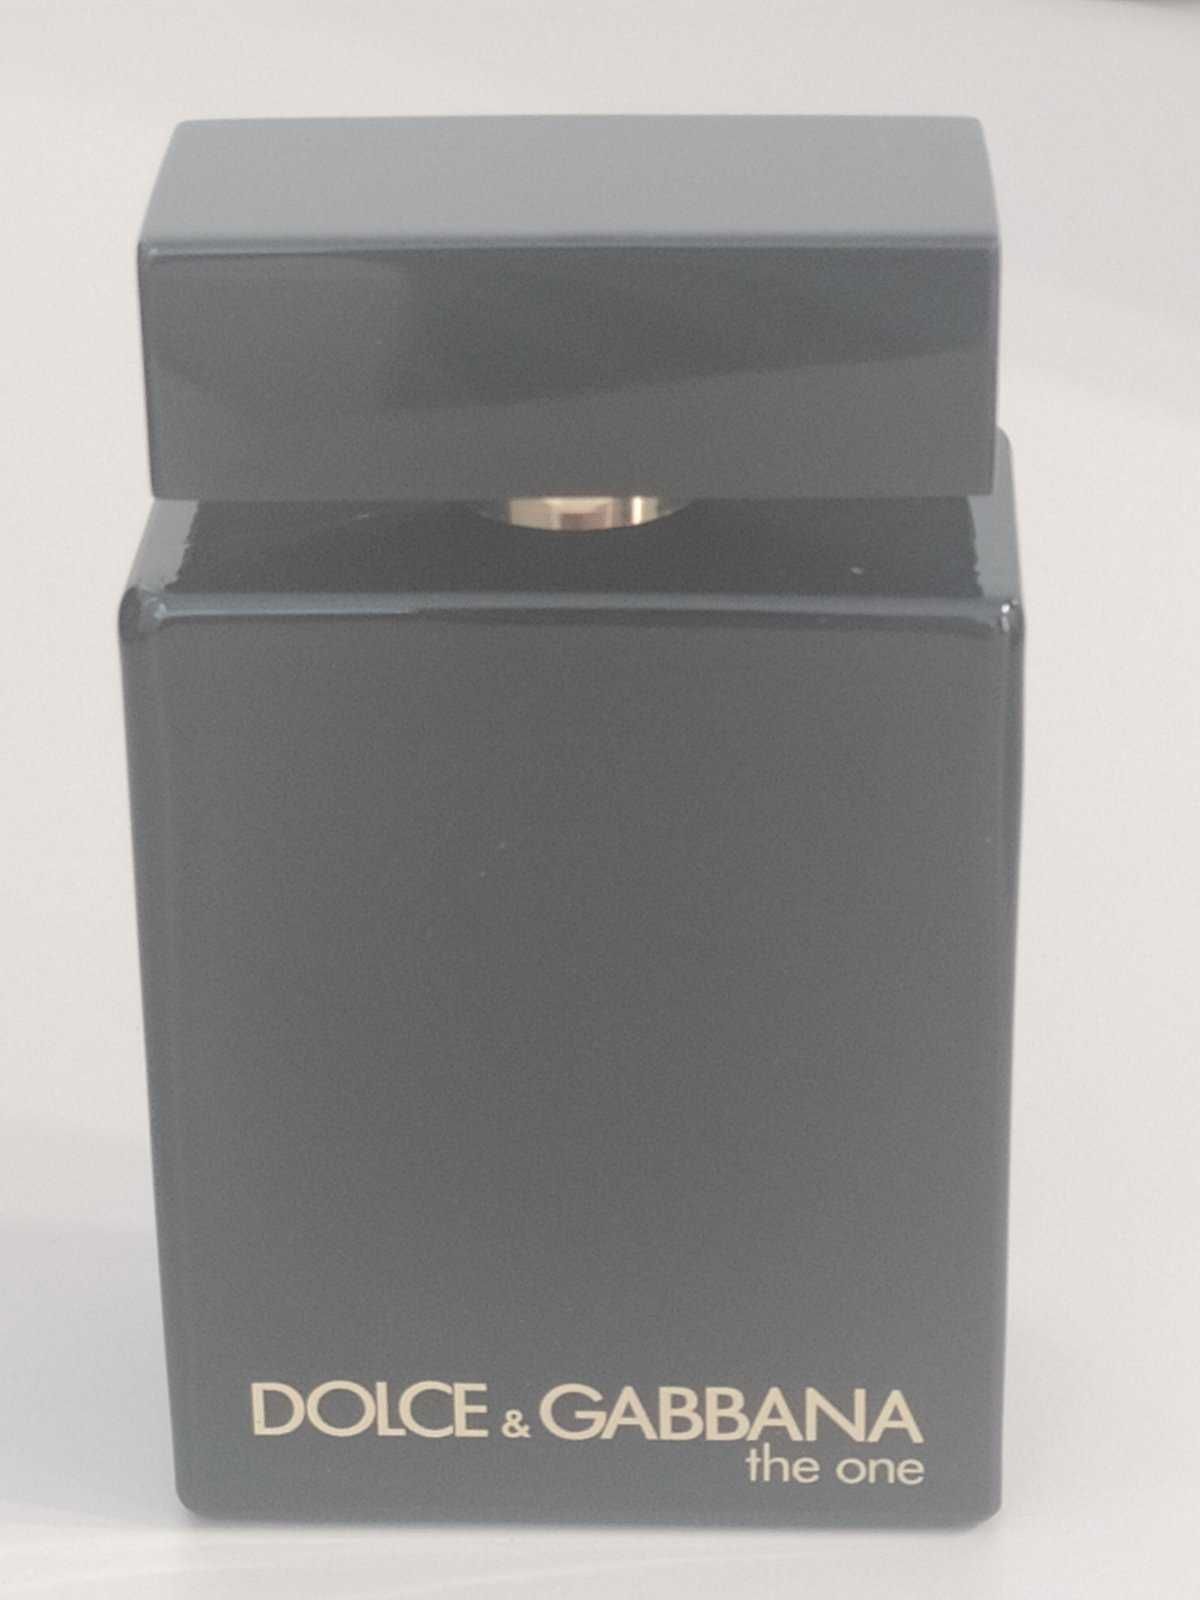 Dolce & Gabbana The One Intense edp 100 мл Оригинал